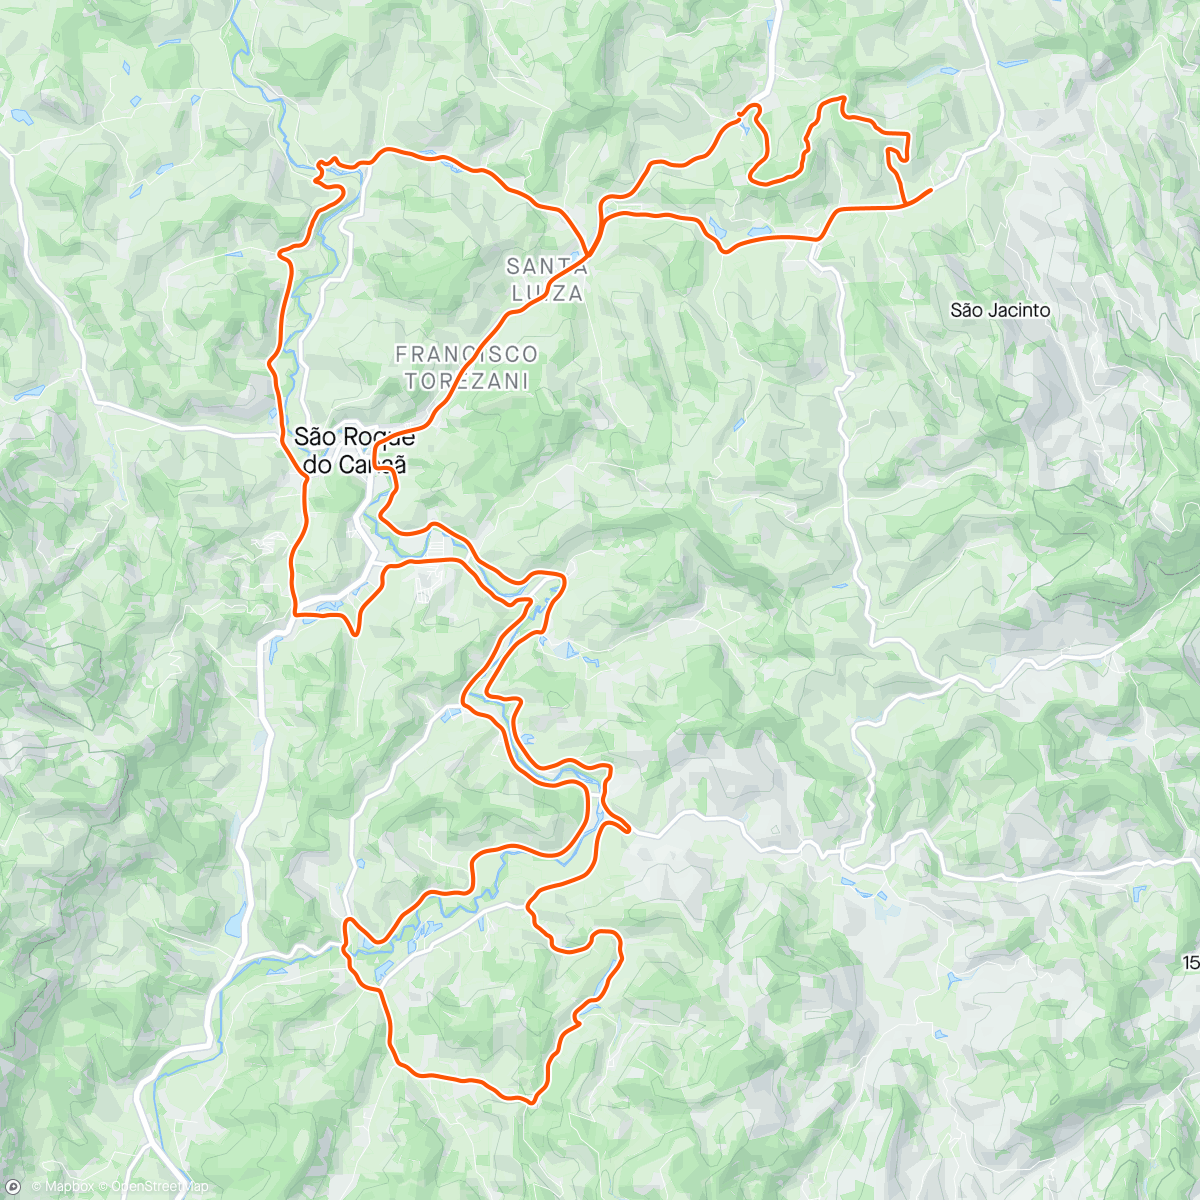 「Passeio ciclistico Thiago Bike São Roque」活動的地圖